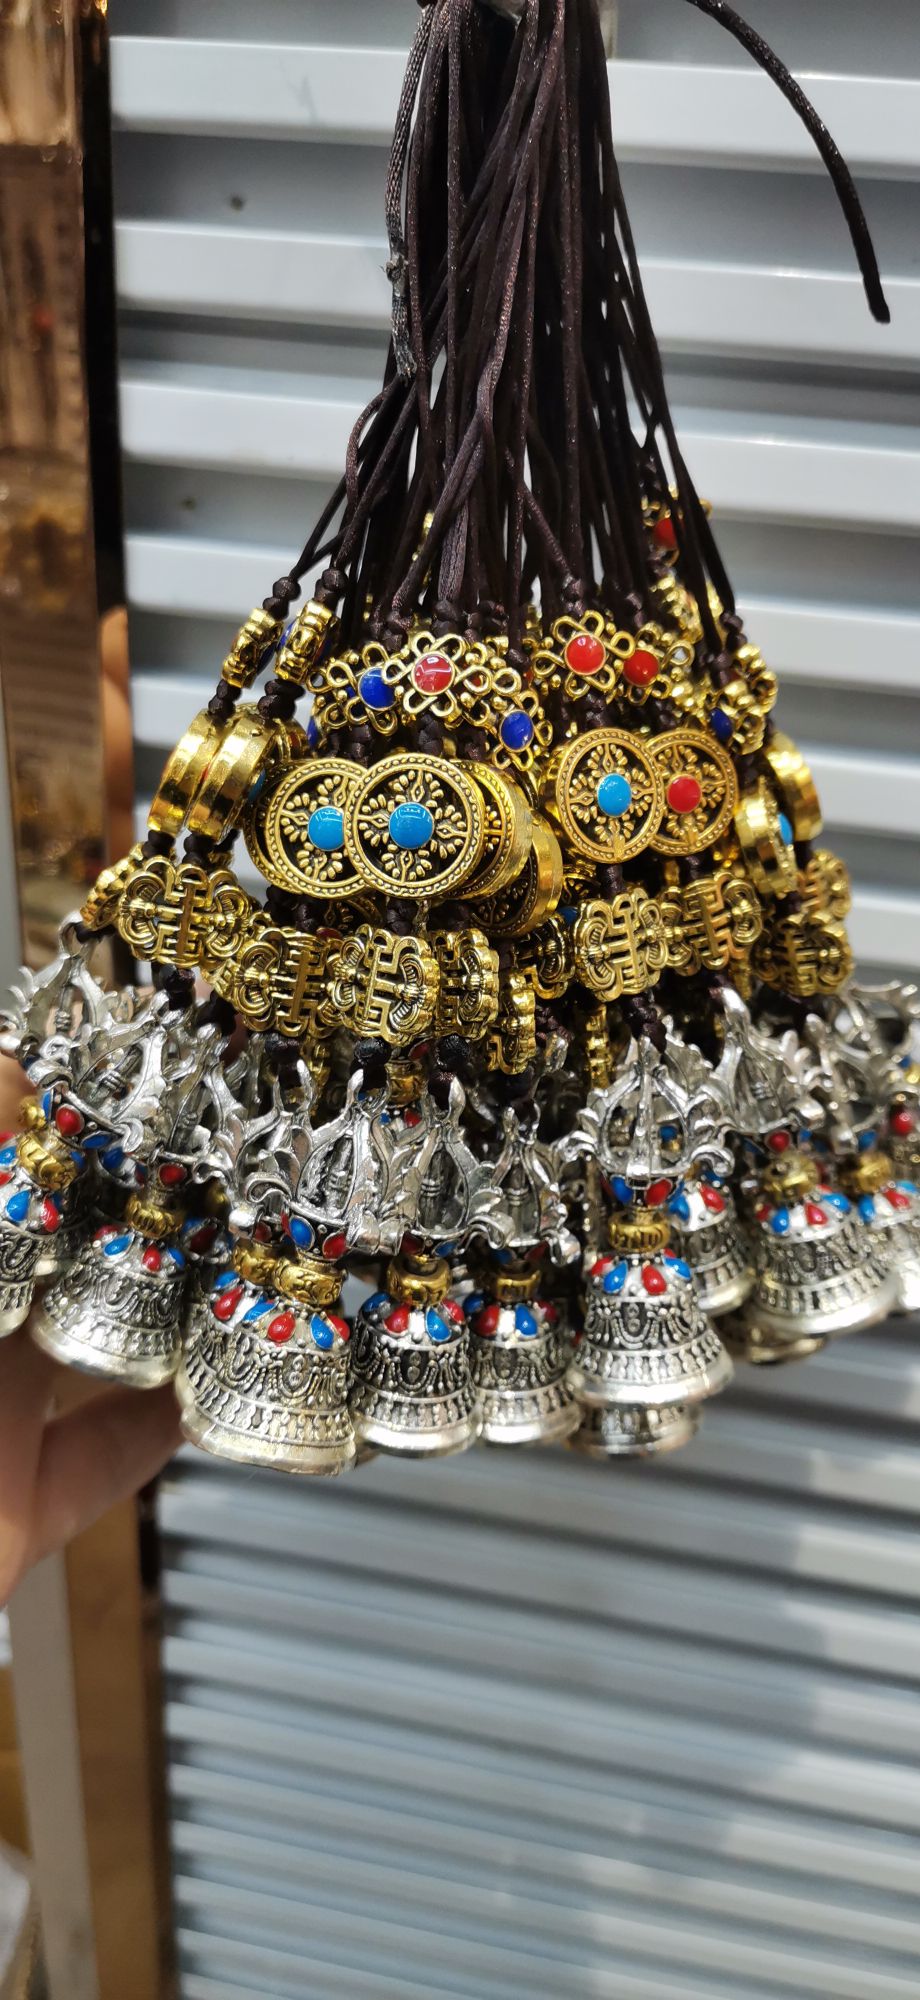 金钢铃铛挂件/西藏十字杵/藏族特色纪念产品图